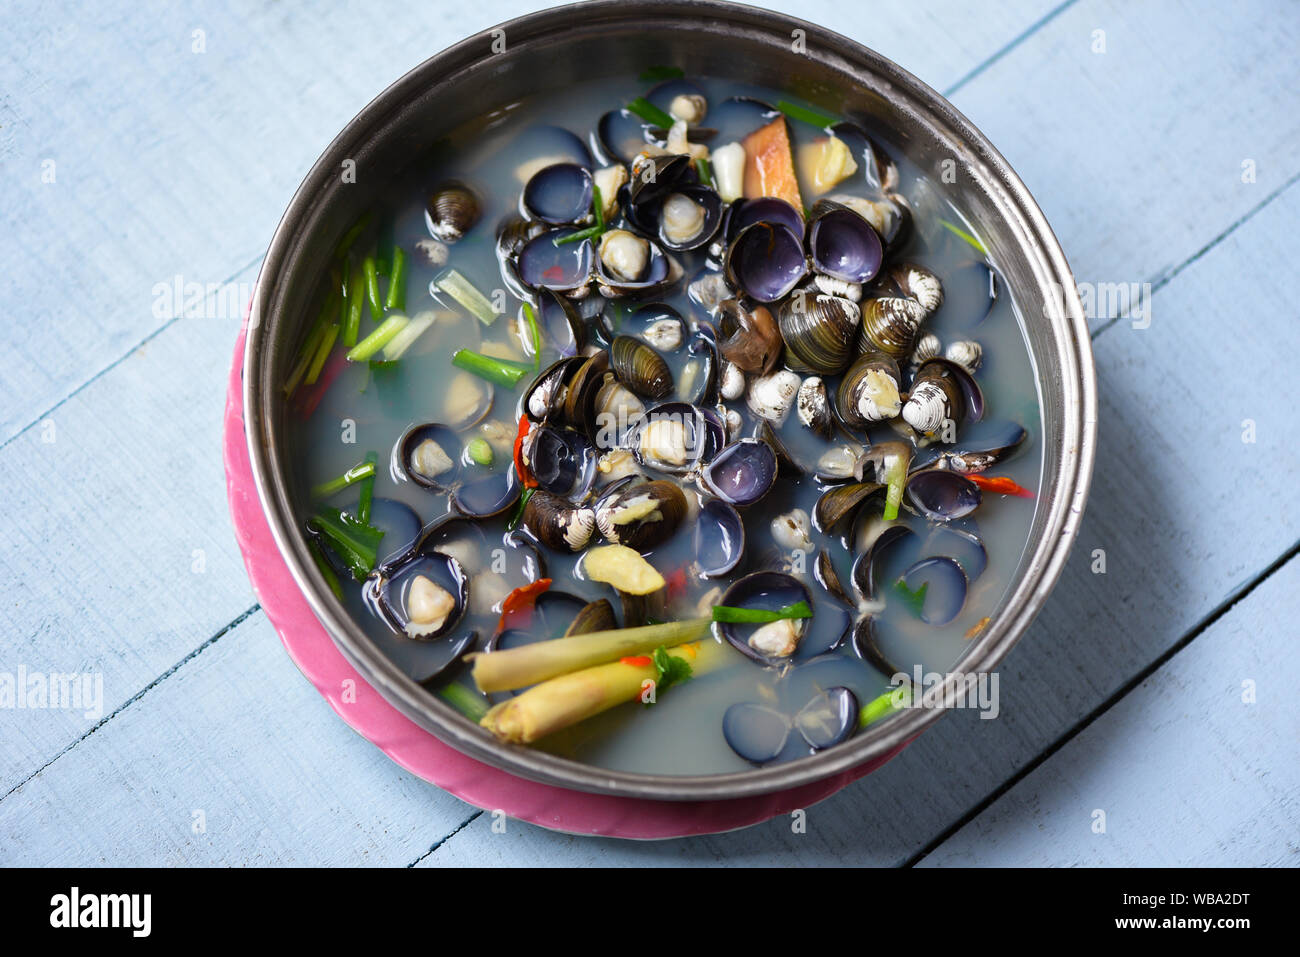 Shijimi marisco bivalvo de agua dulce tales como las almejas shell cocinados con hierbas y especias en el tazón de sopa sobre la mesa de madera Foto de stock